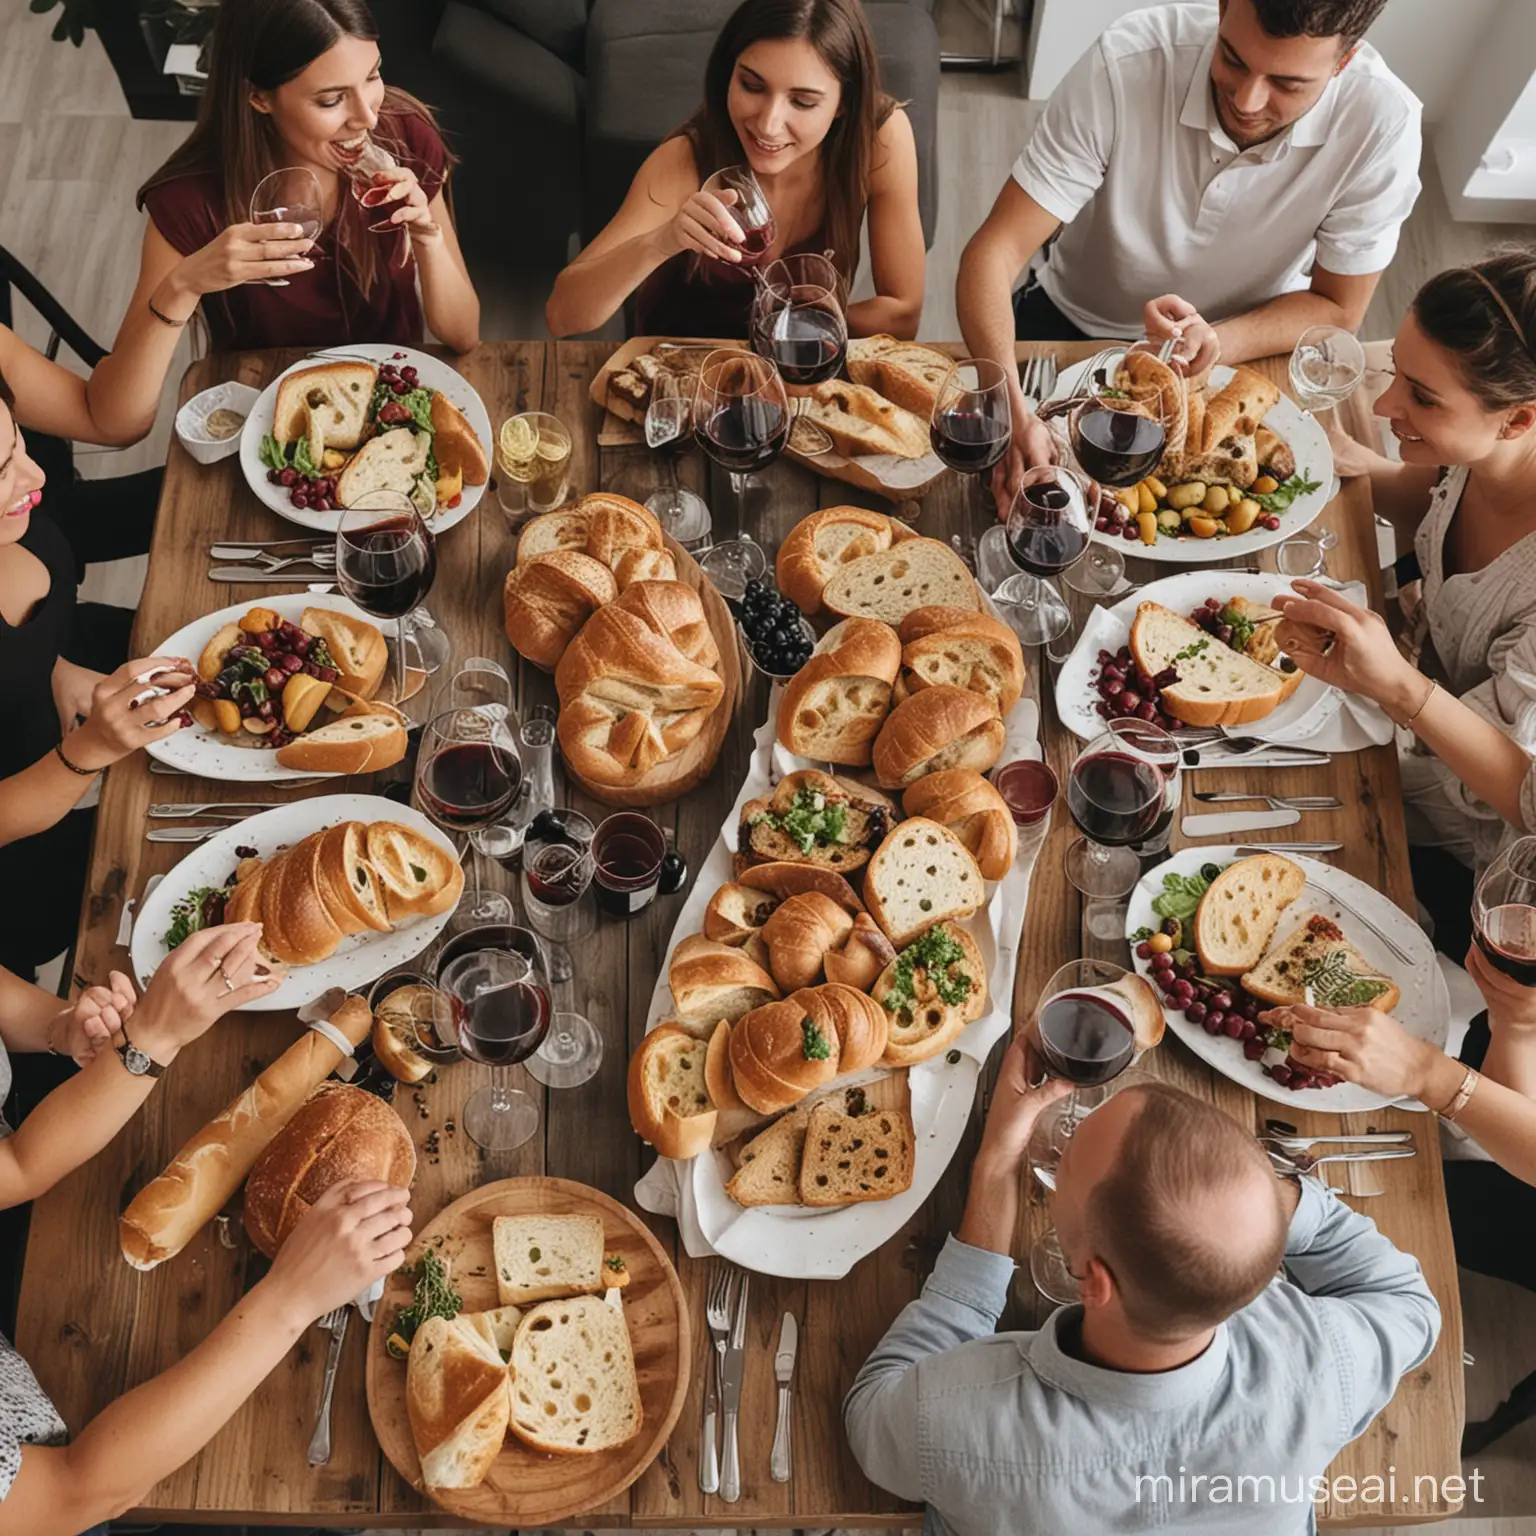 måltid med 12 mennesker der drikker vin og spiser brød